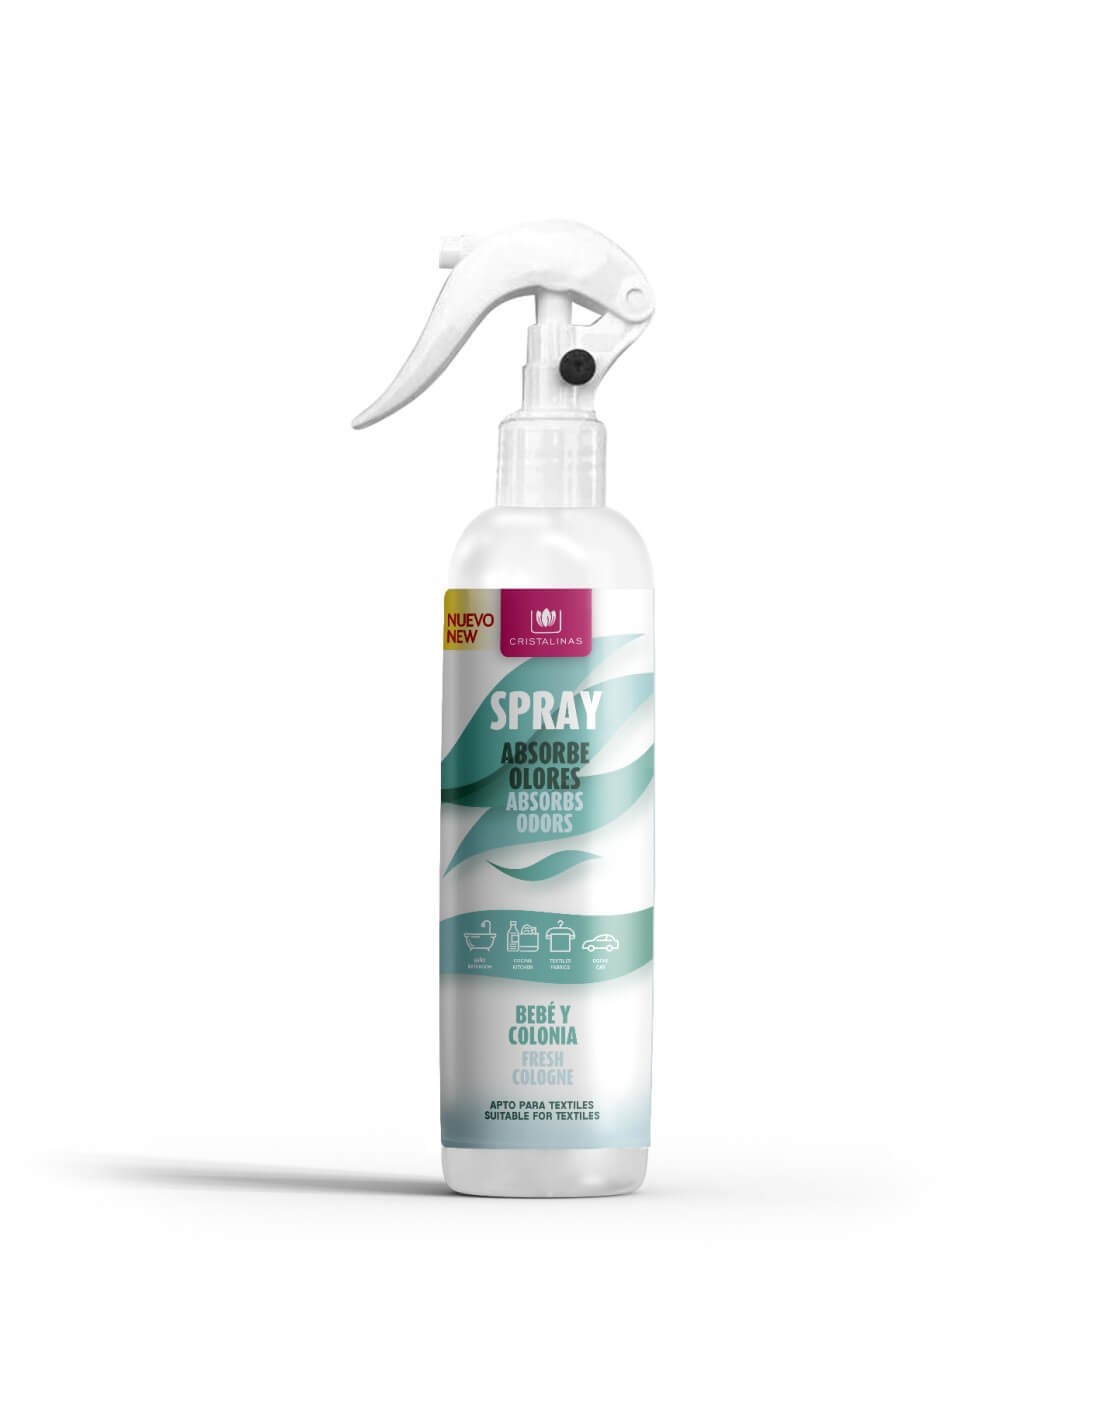 Spray absorbe olores aroma a bebé y colonia